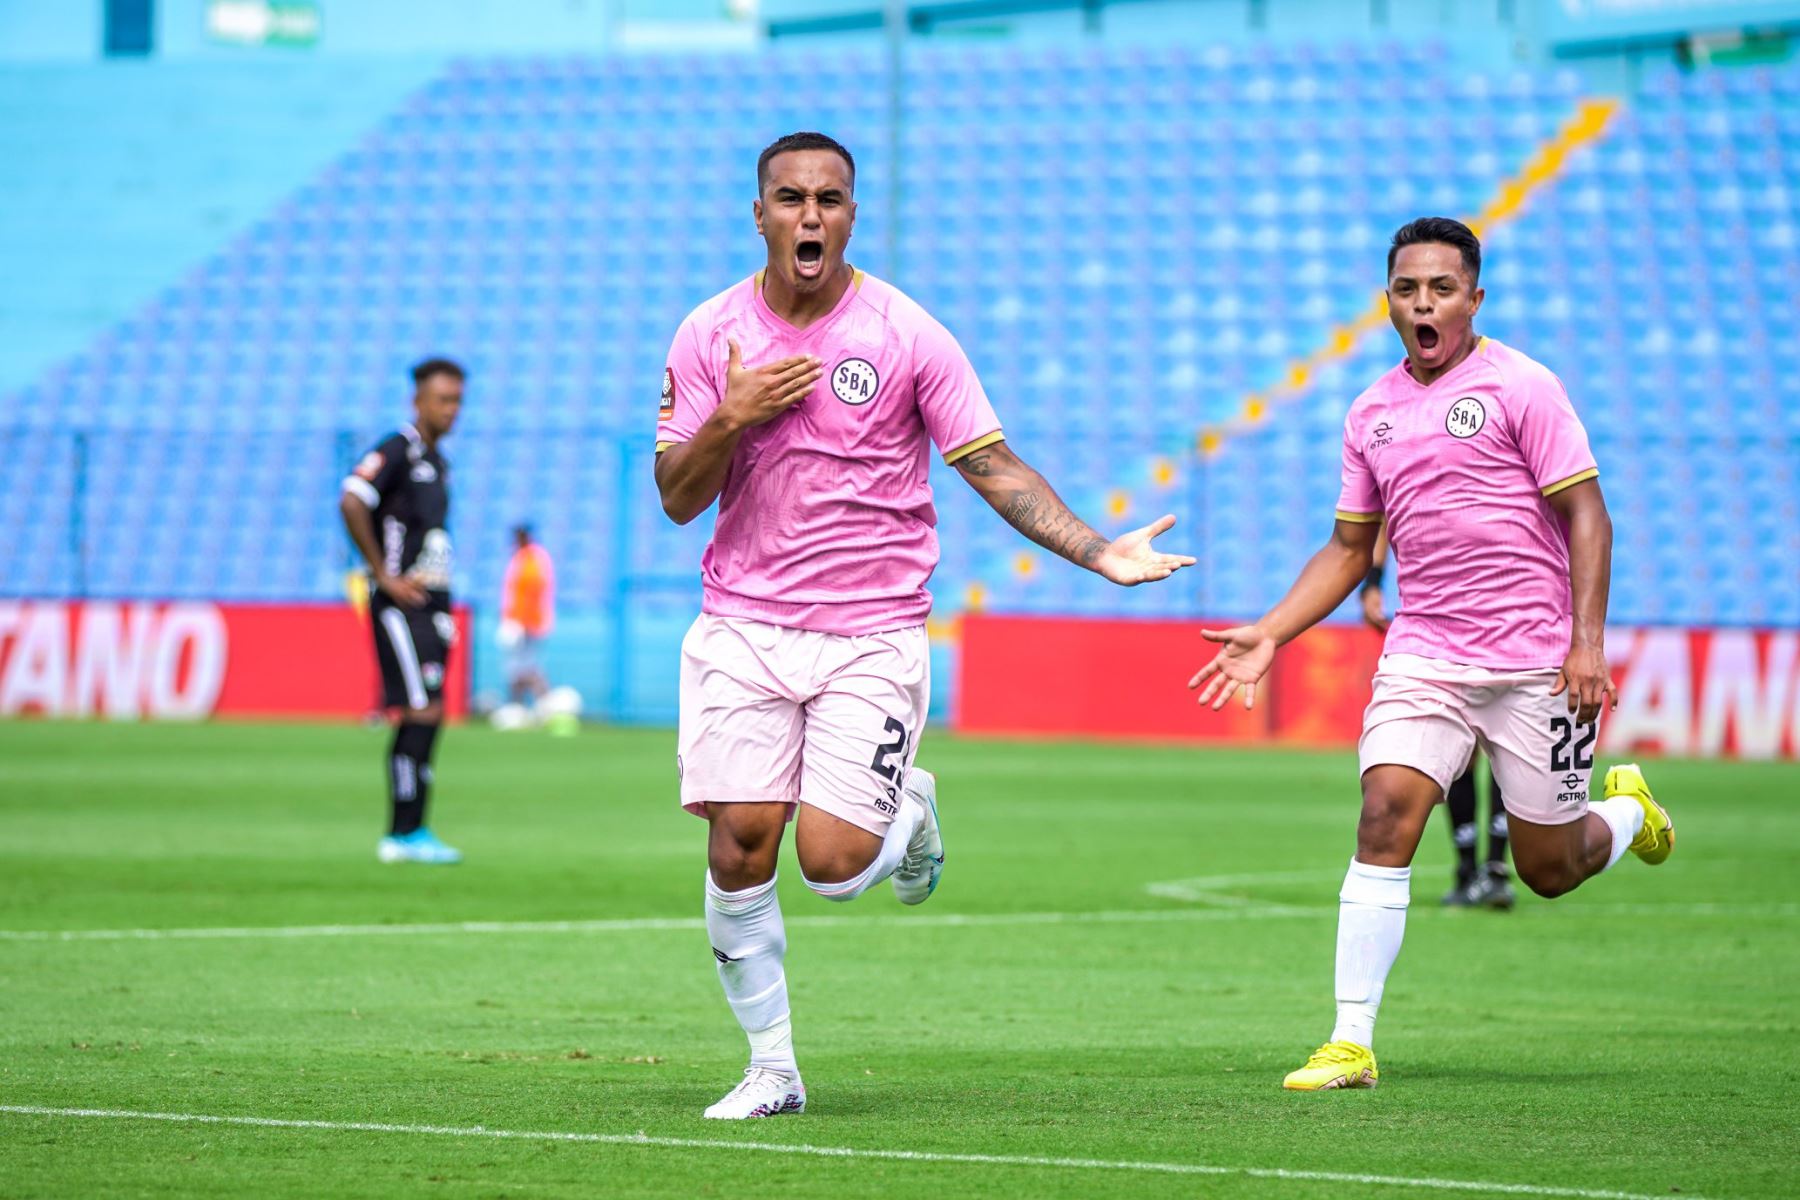 El equipo rosado remontó el partido y logró vencer 2-1 al Unión Comercio en el estadio Alberto Gallardo, por la jornada 3 de la Liga 1 de Fútbol Profesional.
 
Foto: Sport Boys